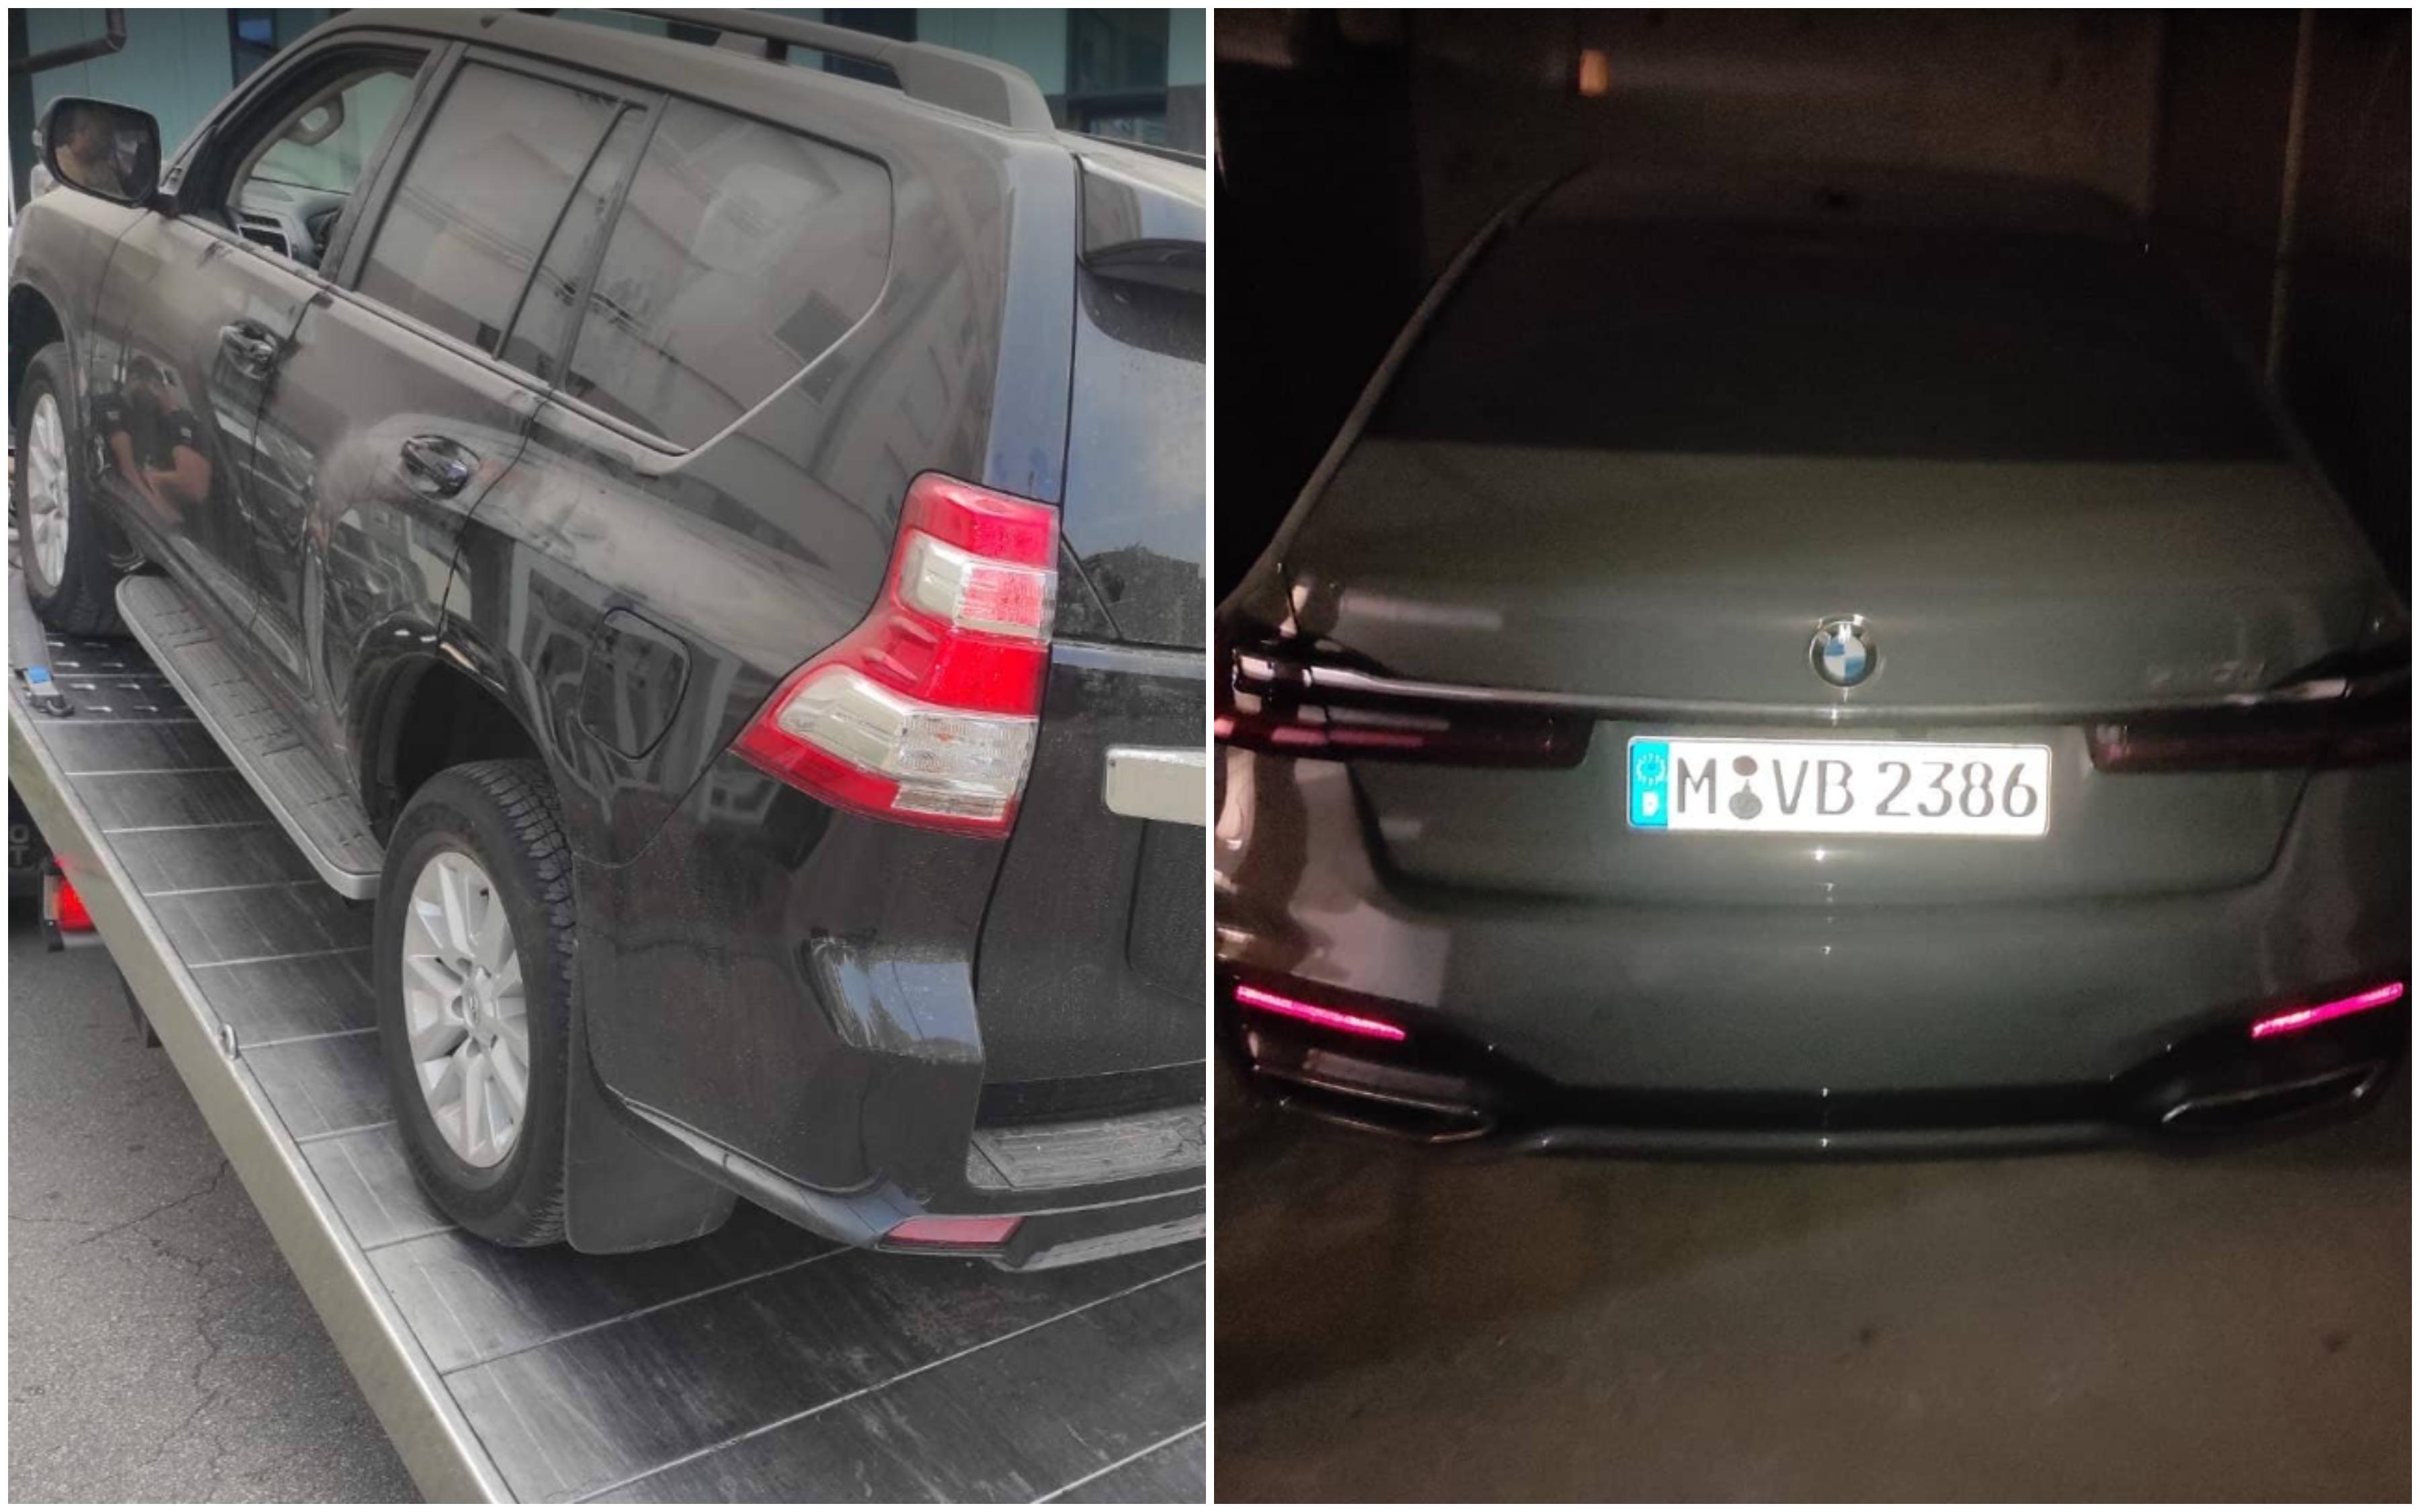 Vozila ukradena: Tojota u Sarajevu, BMW u Njemačkoj - Avaz